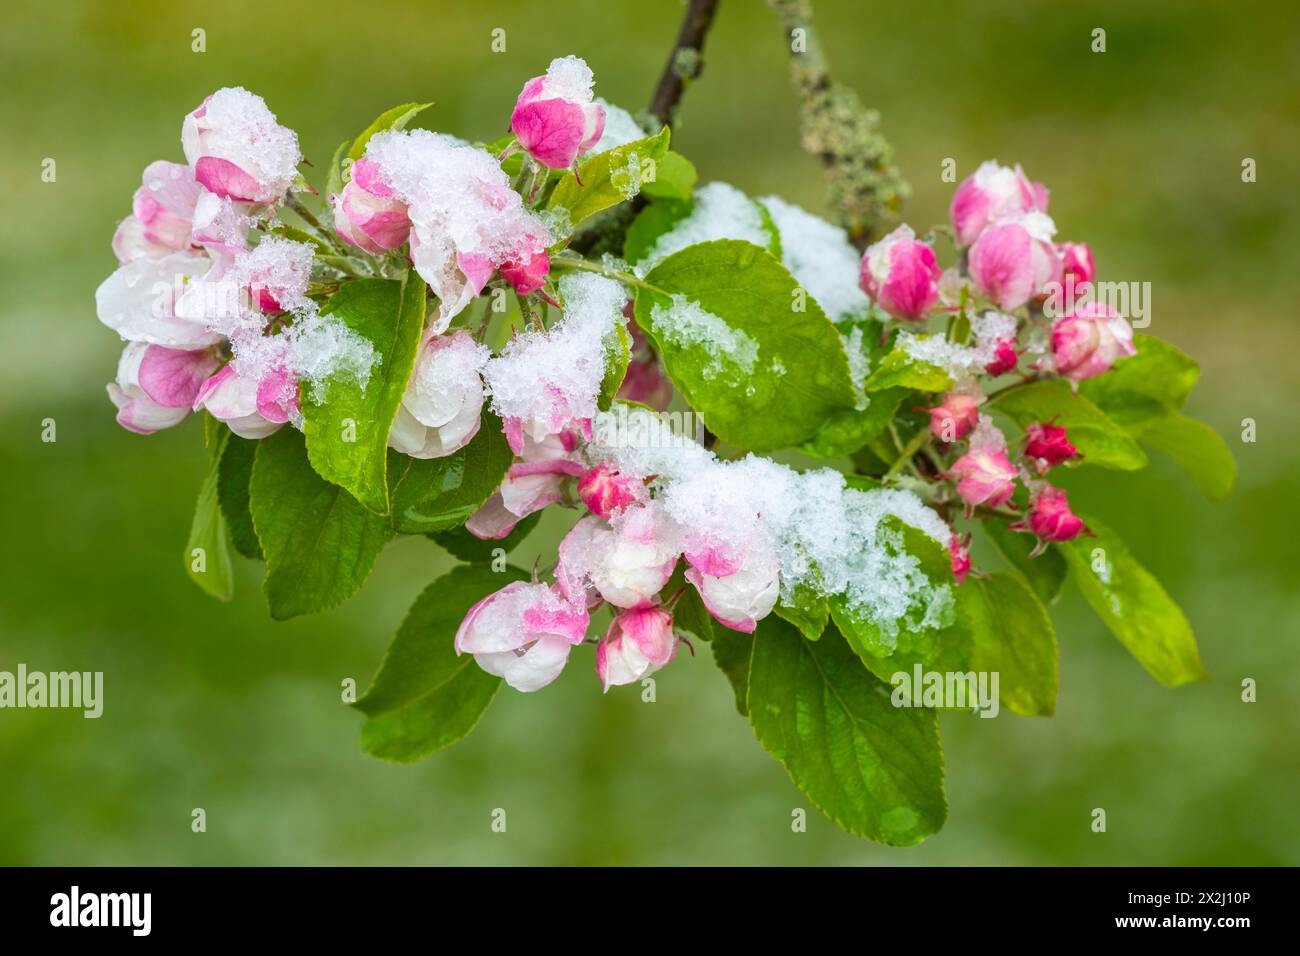 Pommier en fleurs avec neige, pommier (Malus), arbre fruitier à pépins (Pyrinae), verger de prairie, printemps, Goeggingen, Krauchenwies, parc naturel du Danube supérieur Banque D'Images